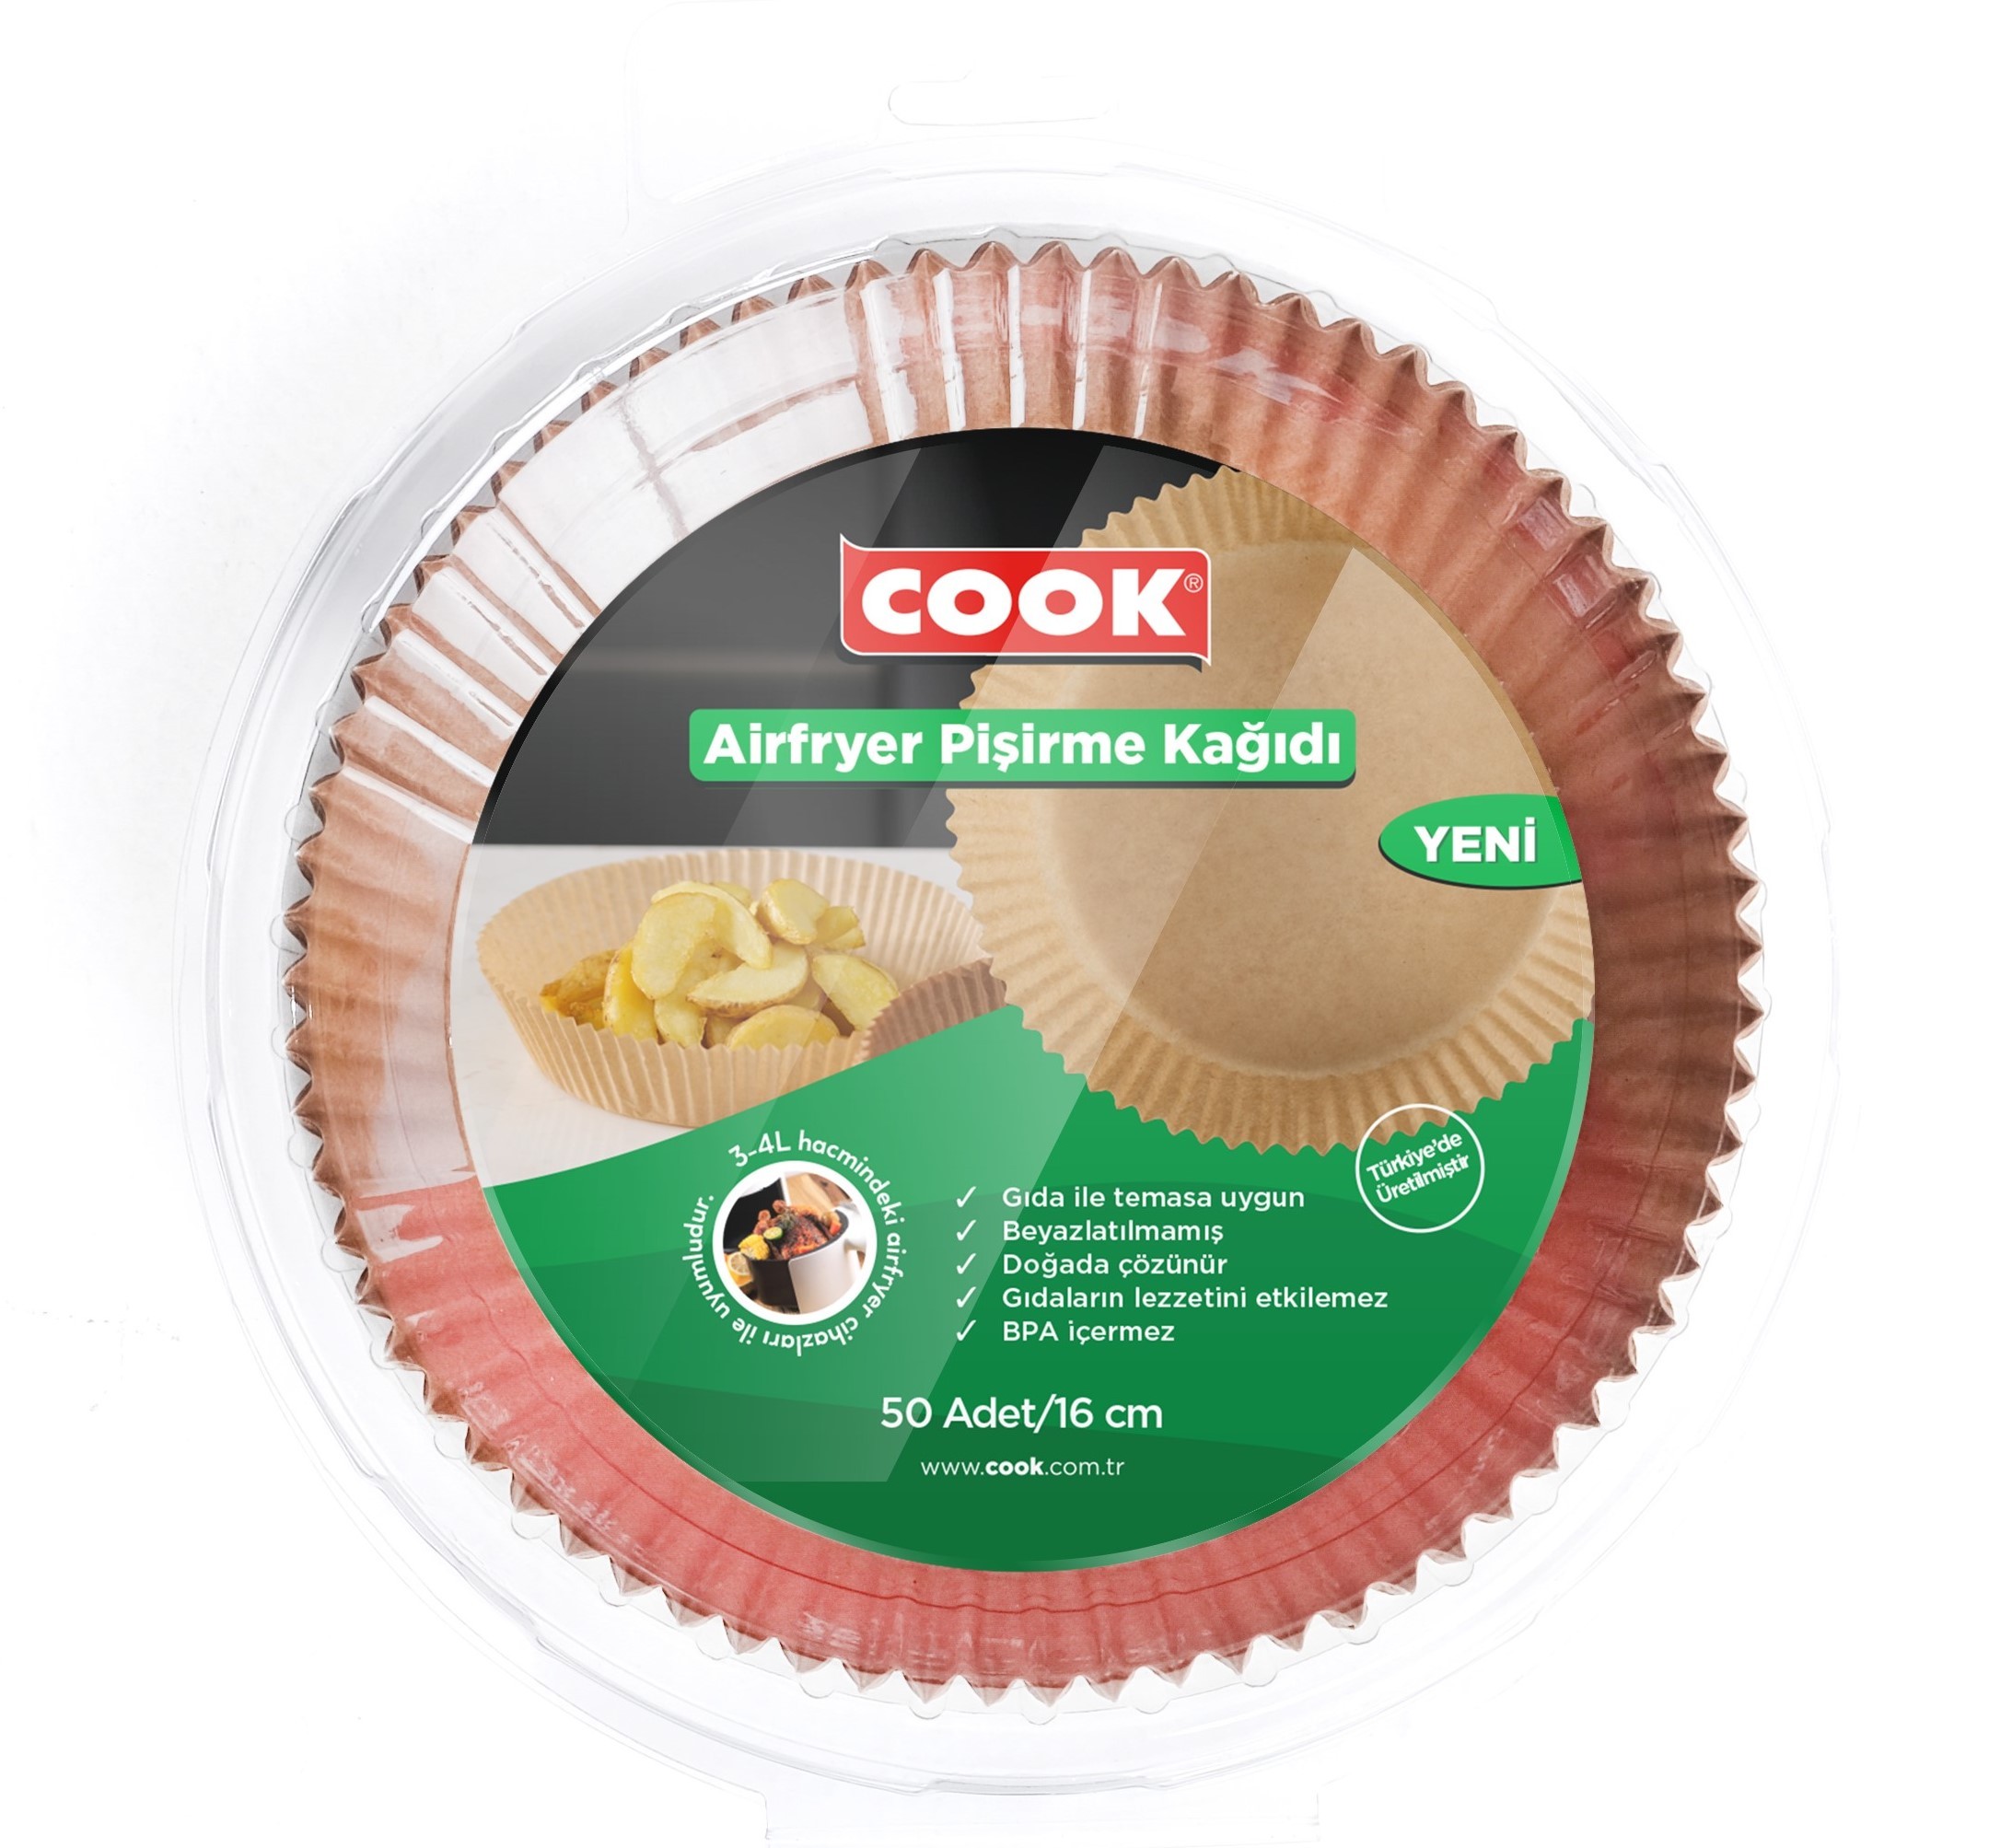 COOK Airfryer Pişirme Kağıdı 16 cm 50 Adet